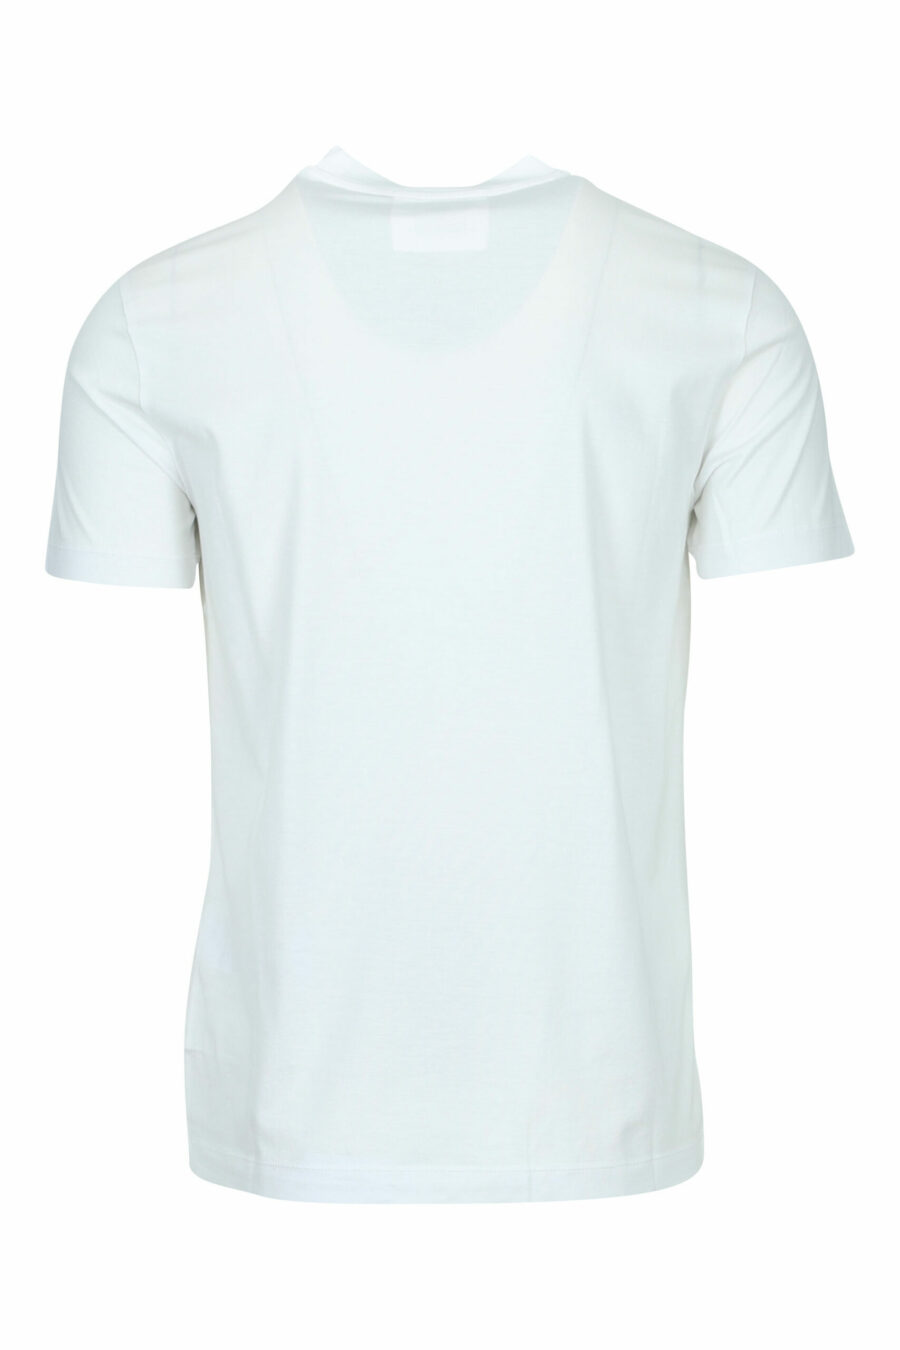 T-shirt blanc avec minilogue "emporio" - 8059516200147 1 à l'échelle